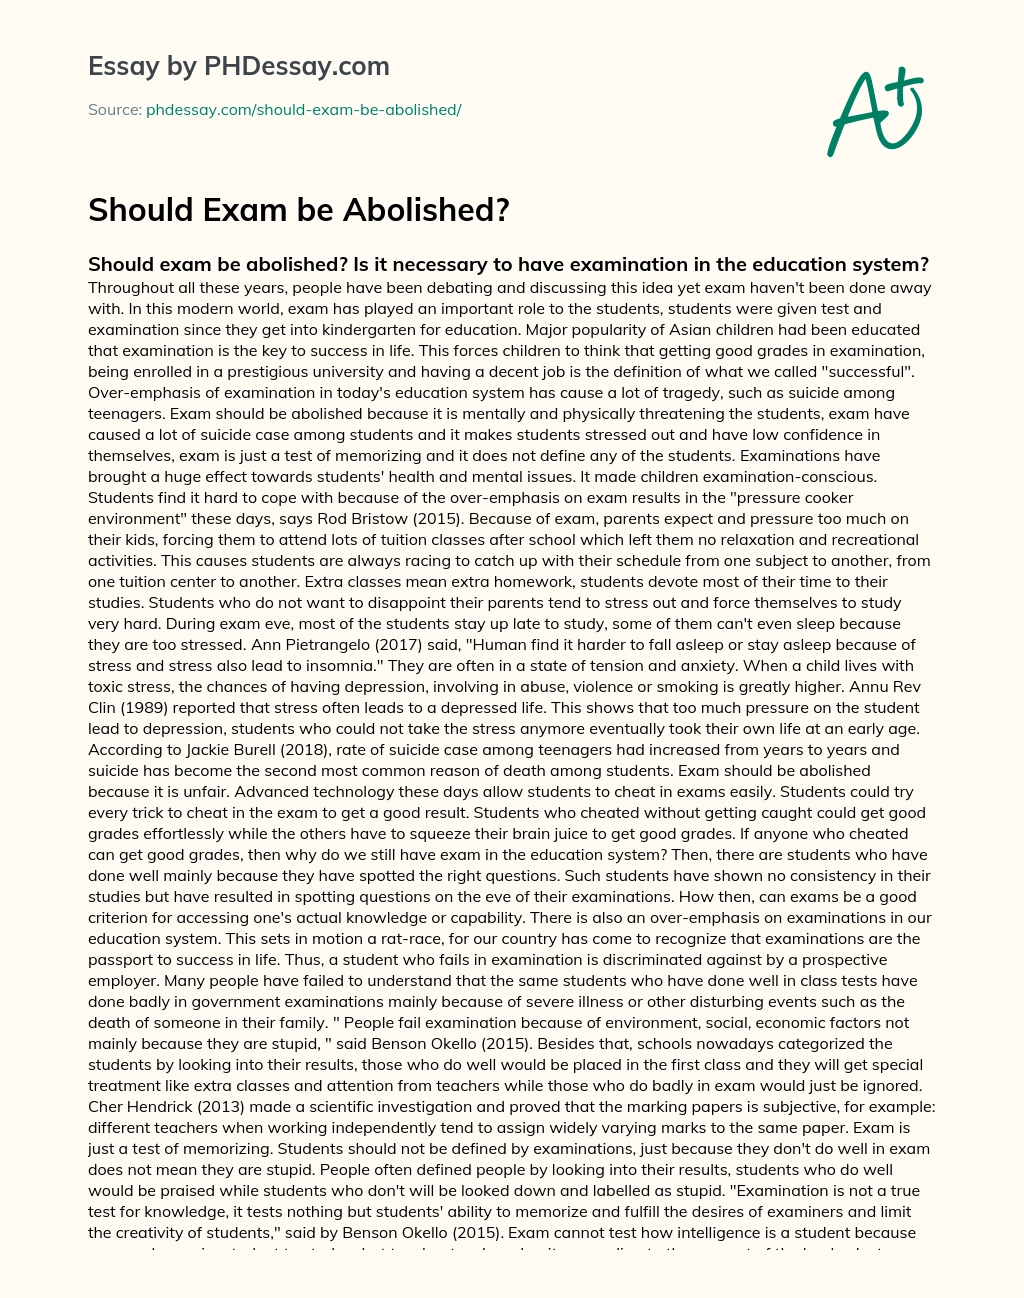 examination should not be abolished